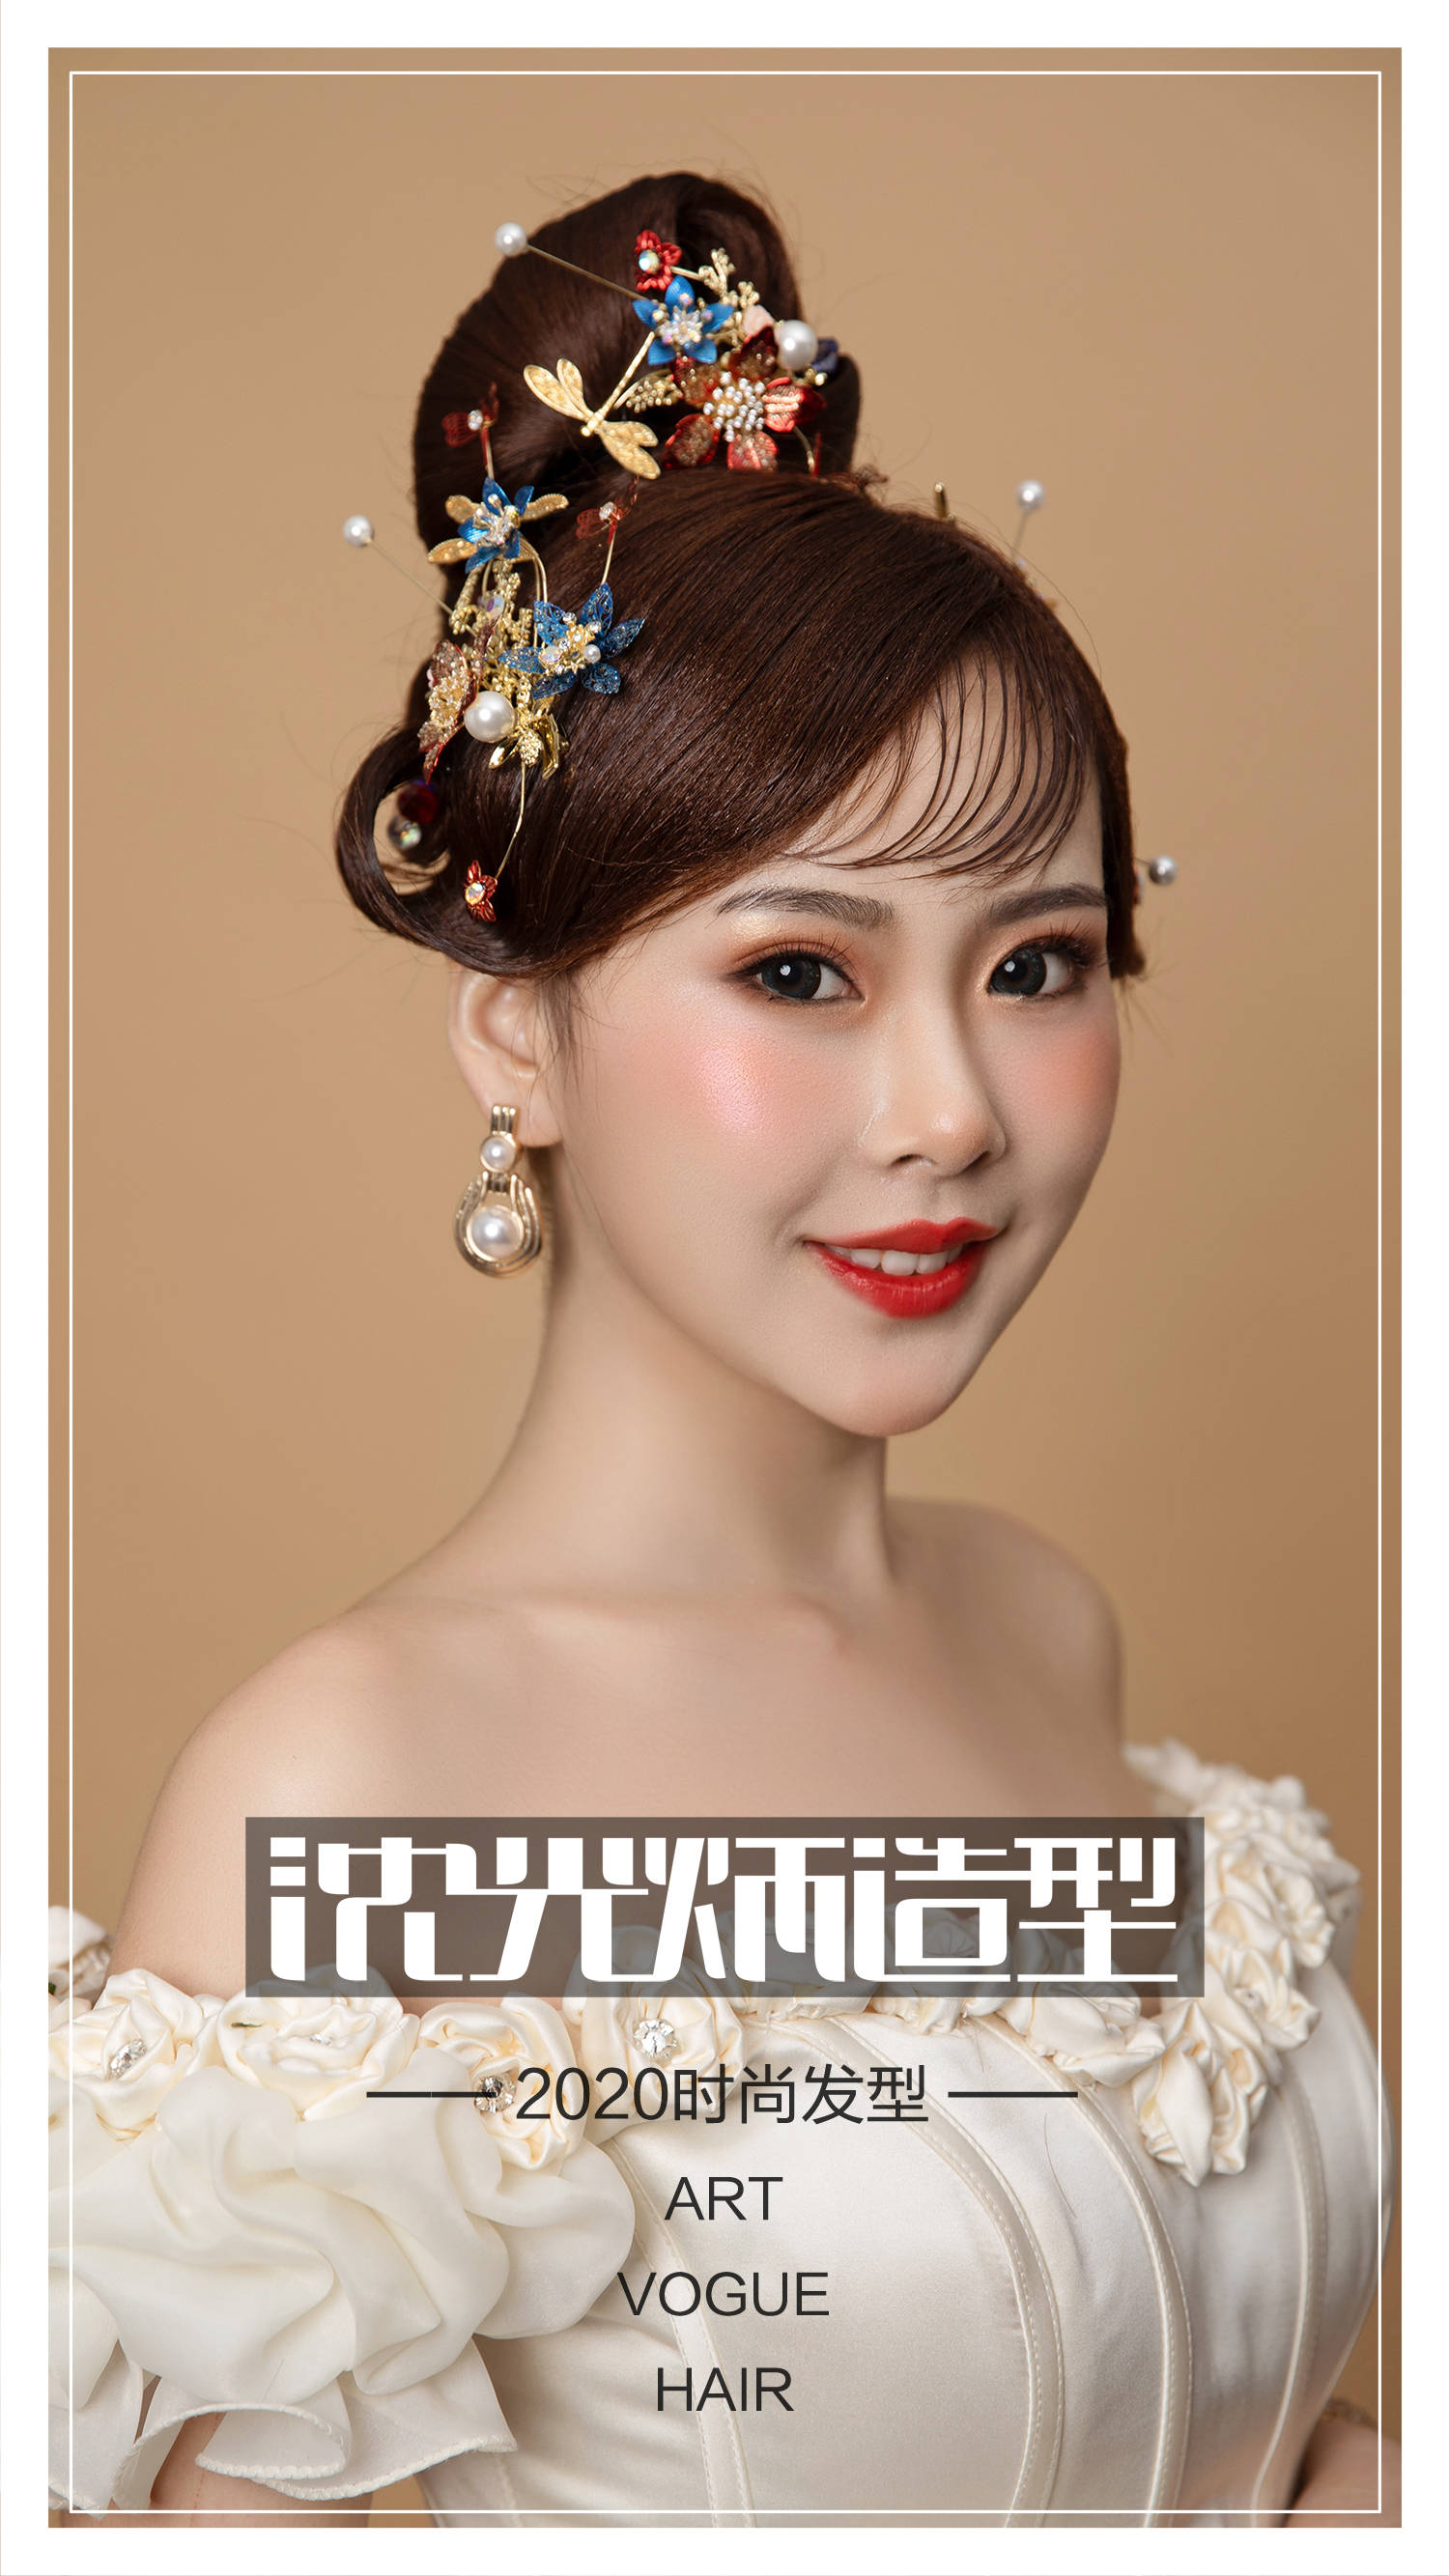 2020新娘发型设计大全 【沈光炳造型】超干净简约的韩式新娘盘发